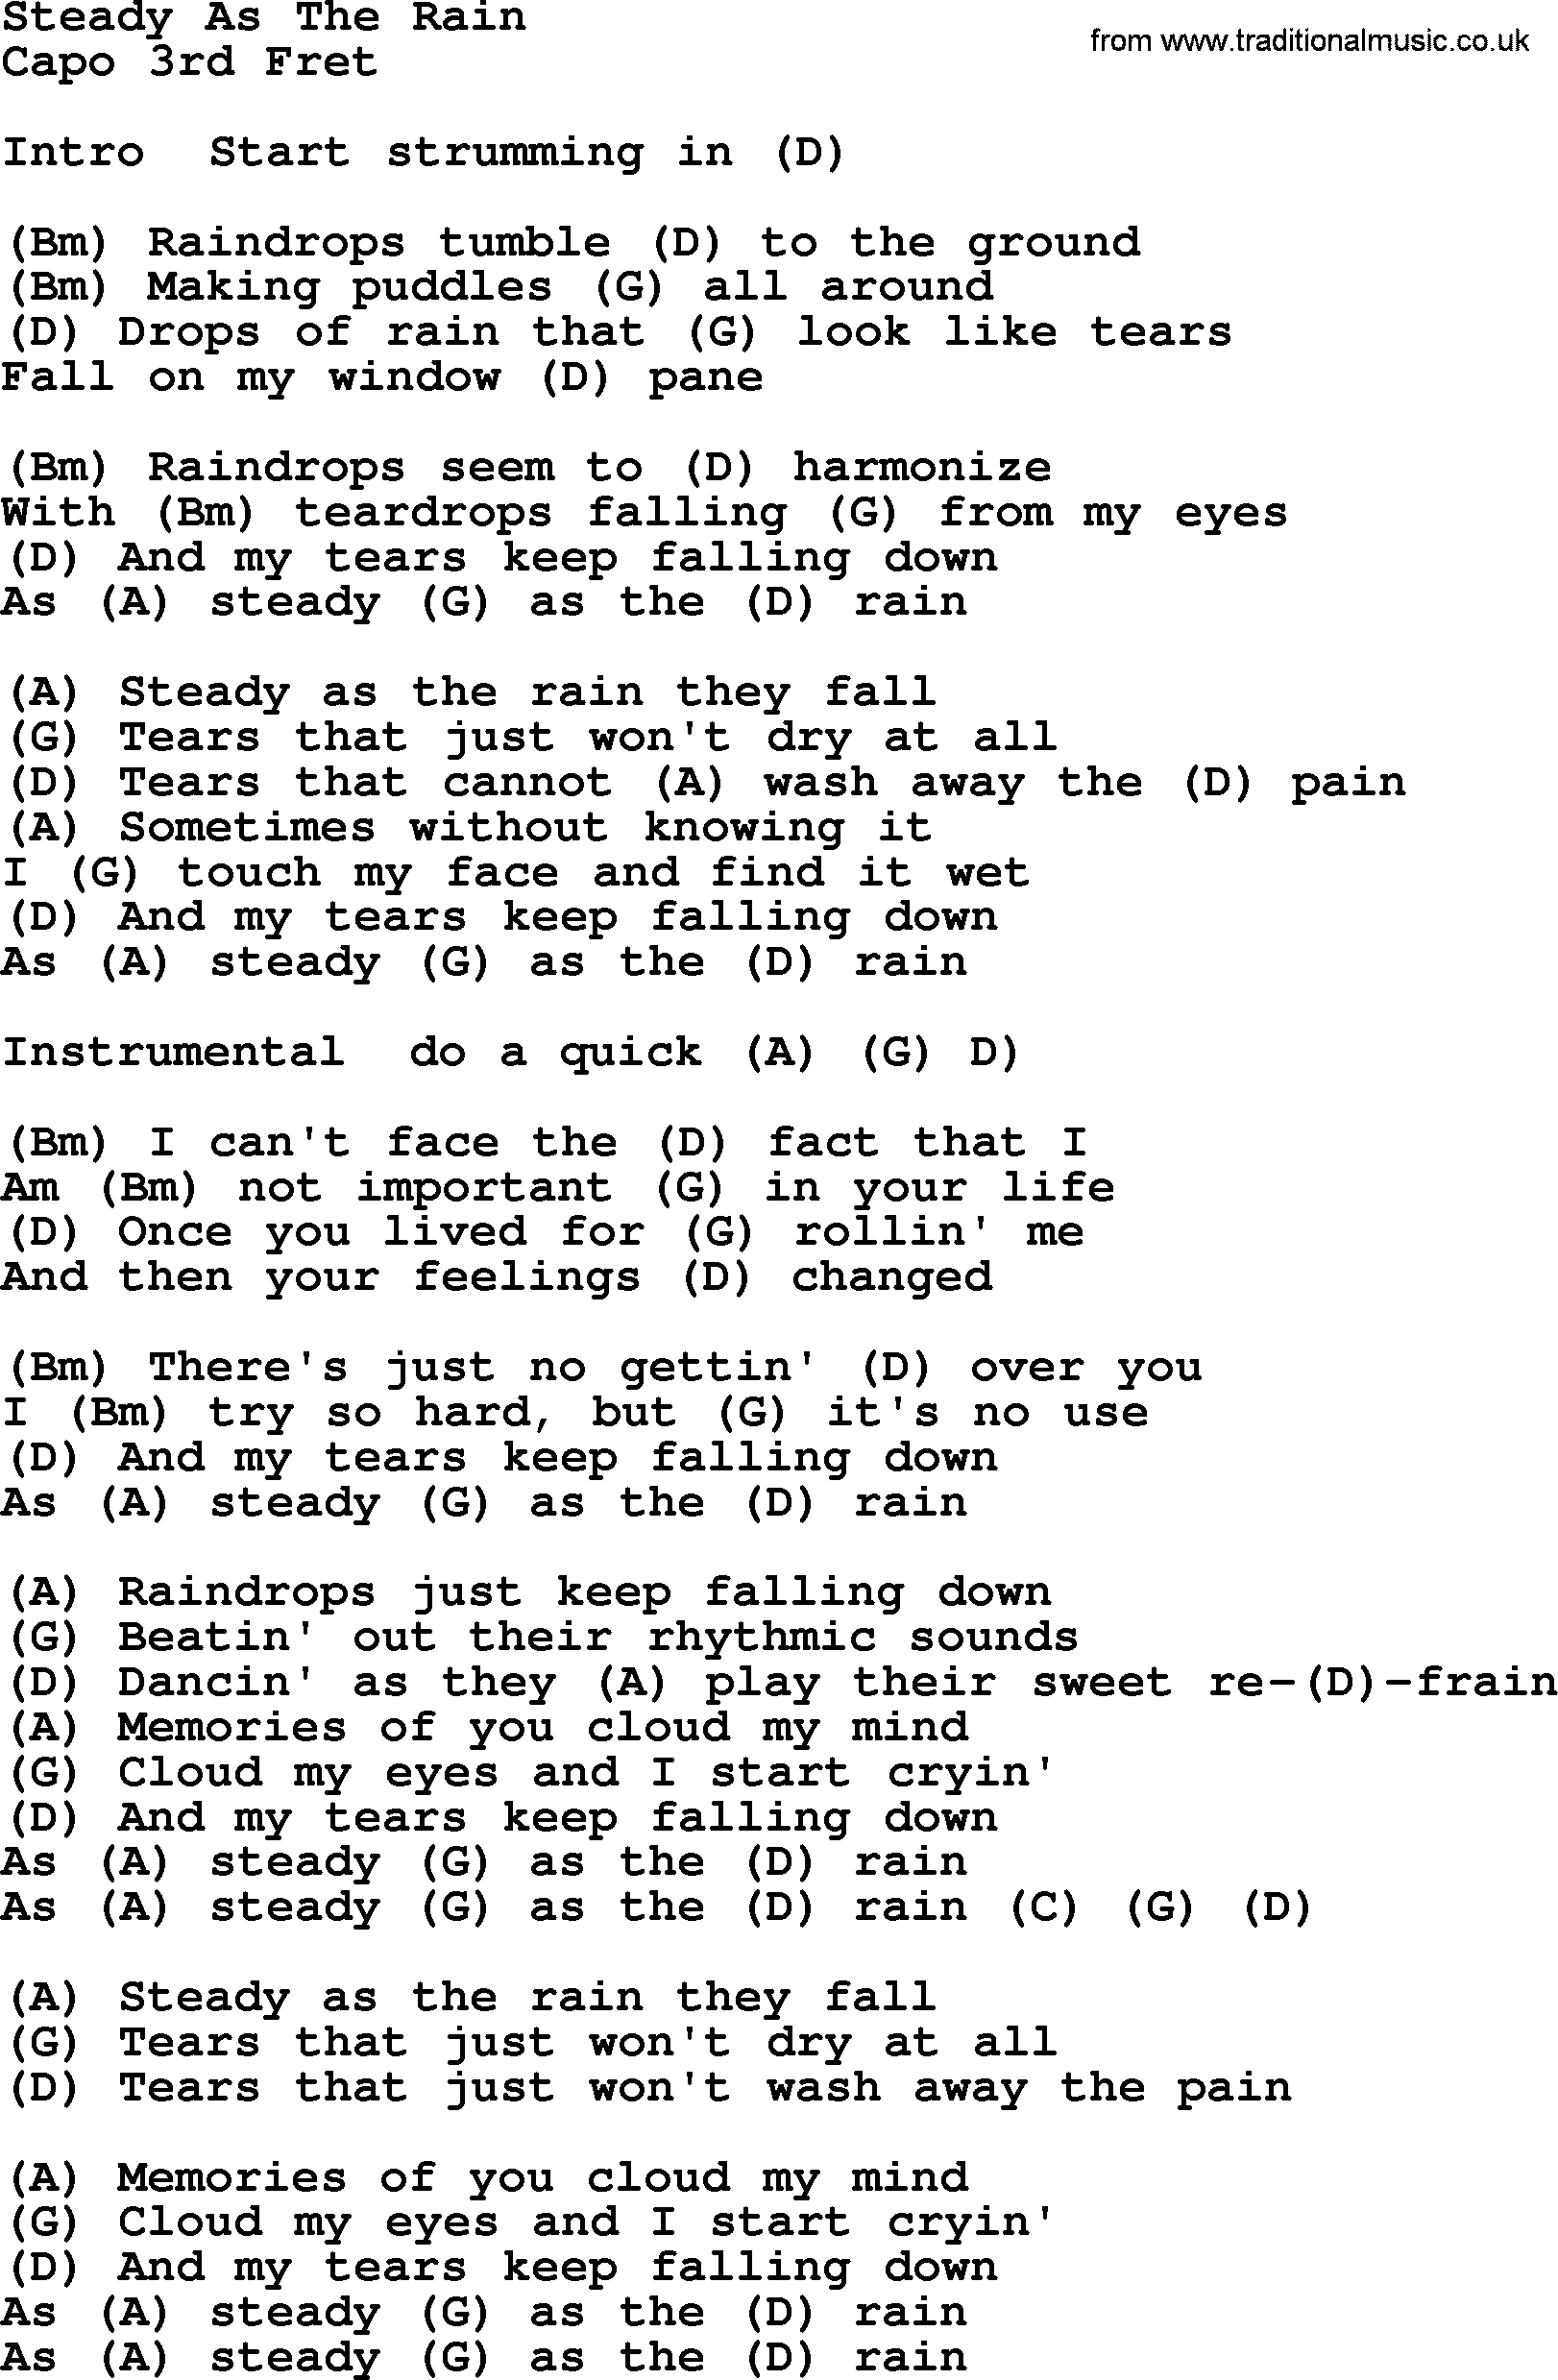 Dolly Parton song Steady As The Rain, lyrics and chords